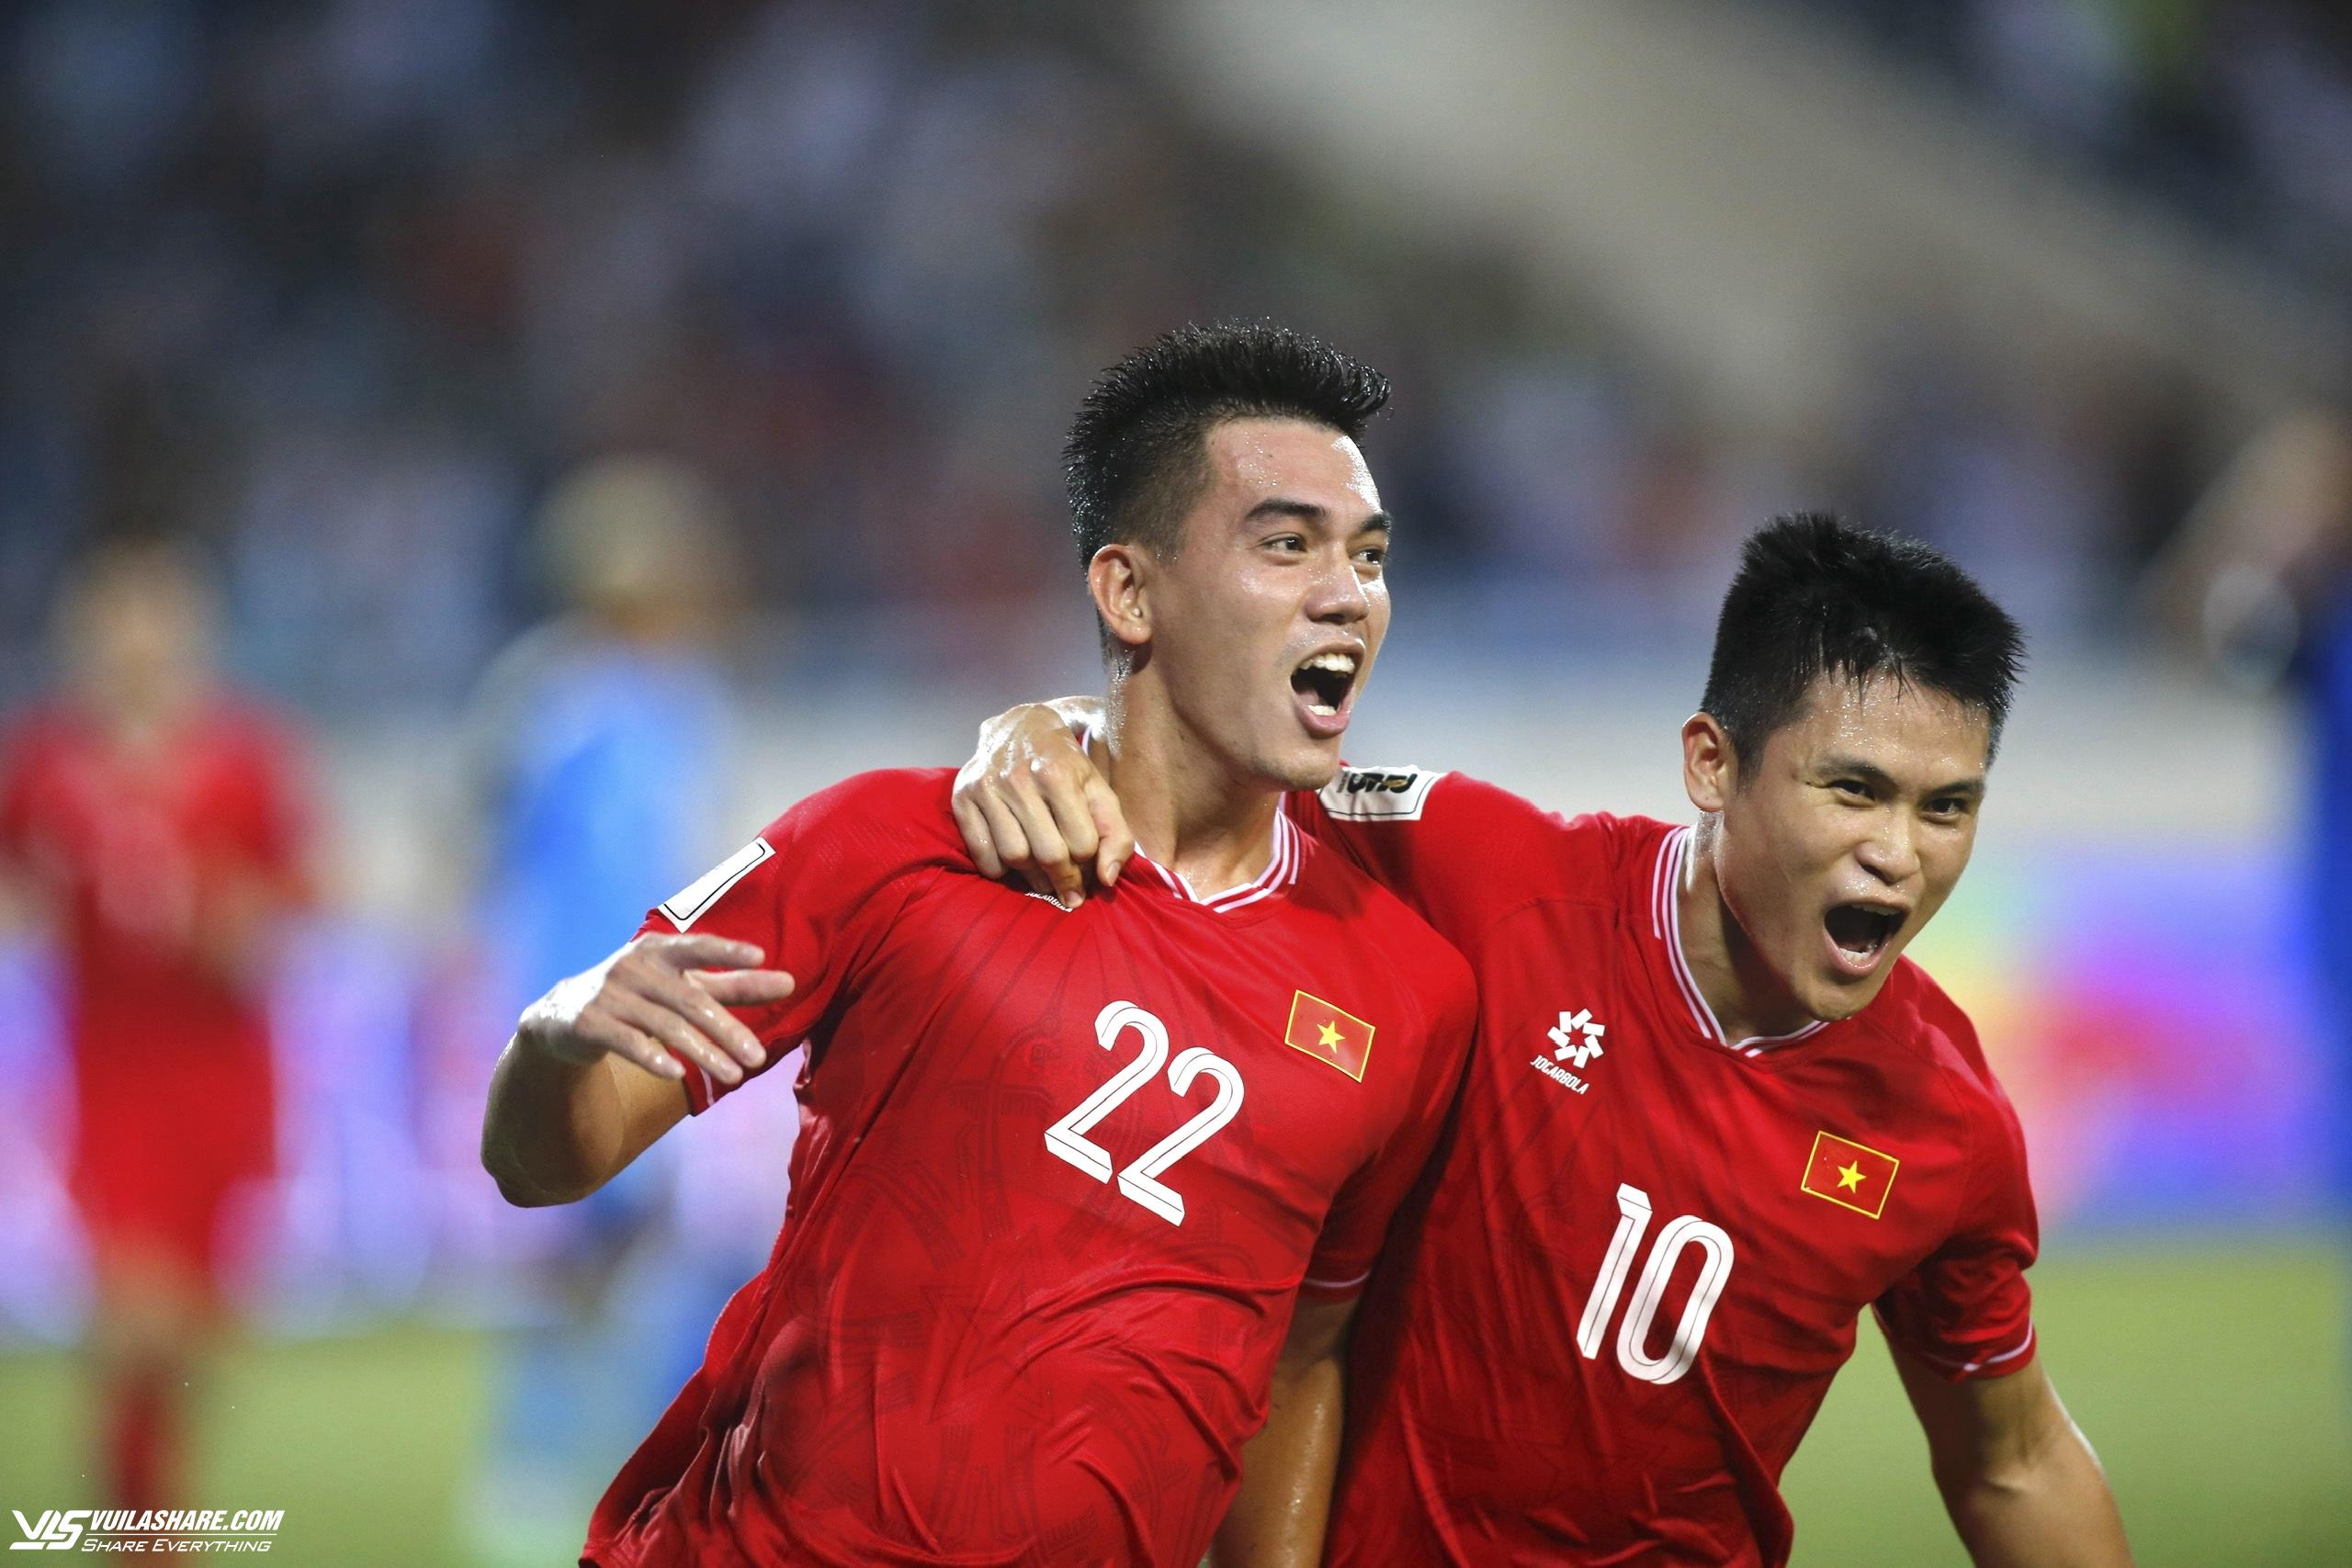 Tiến Linh và Tuấn Hải cùng lập công cho đội tuyển Việt Nam